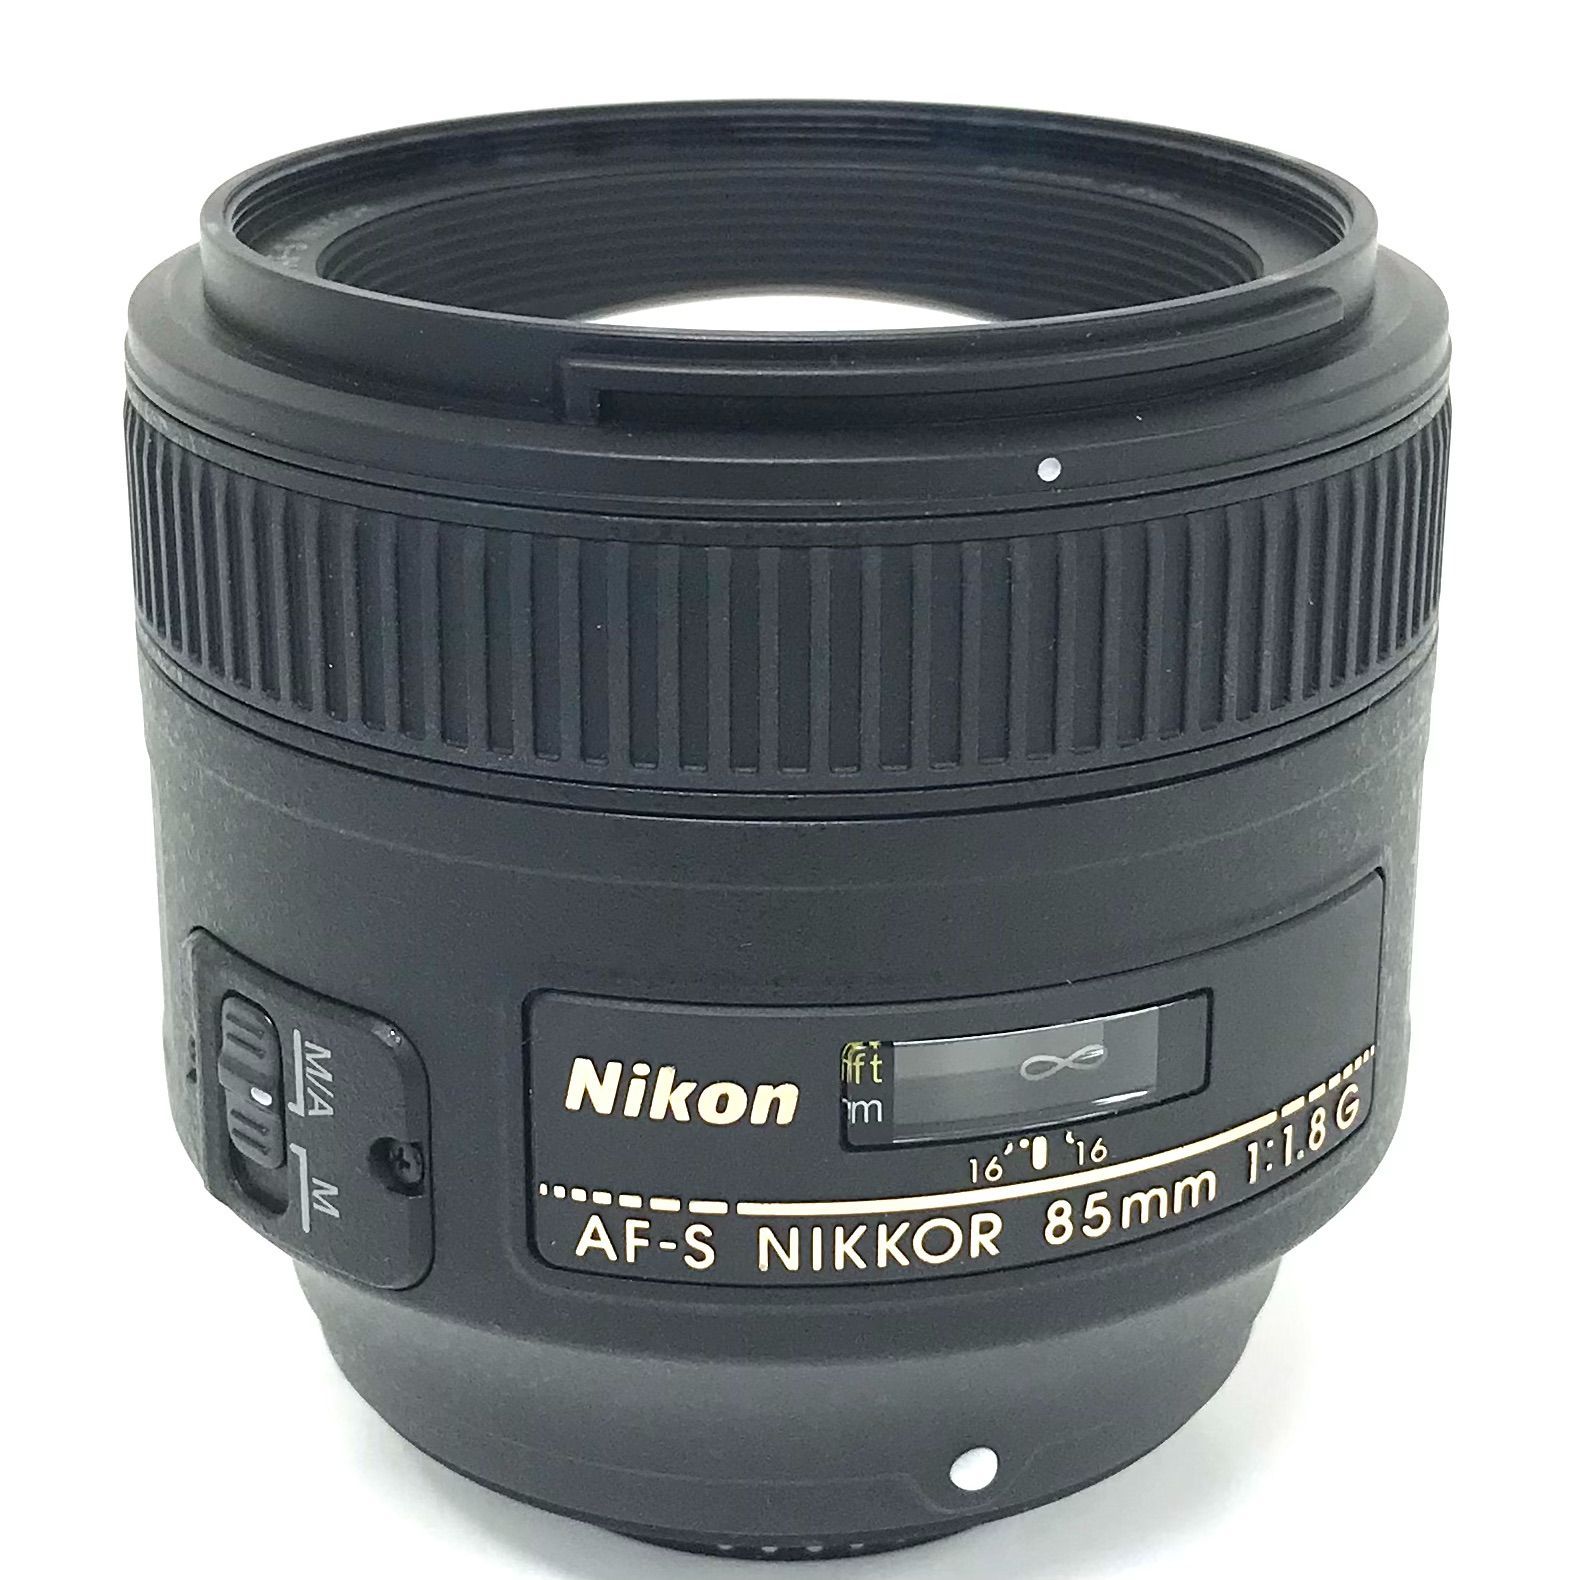 θ ニコン AF-S NIKKOR 85mm f/1.8G Fマウント用